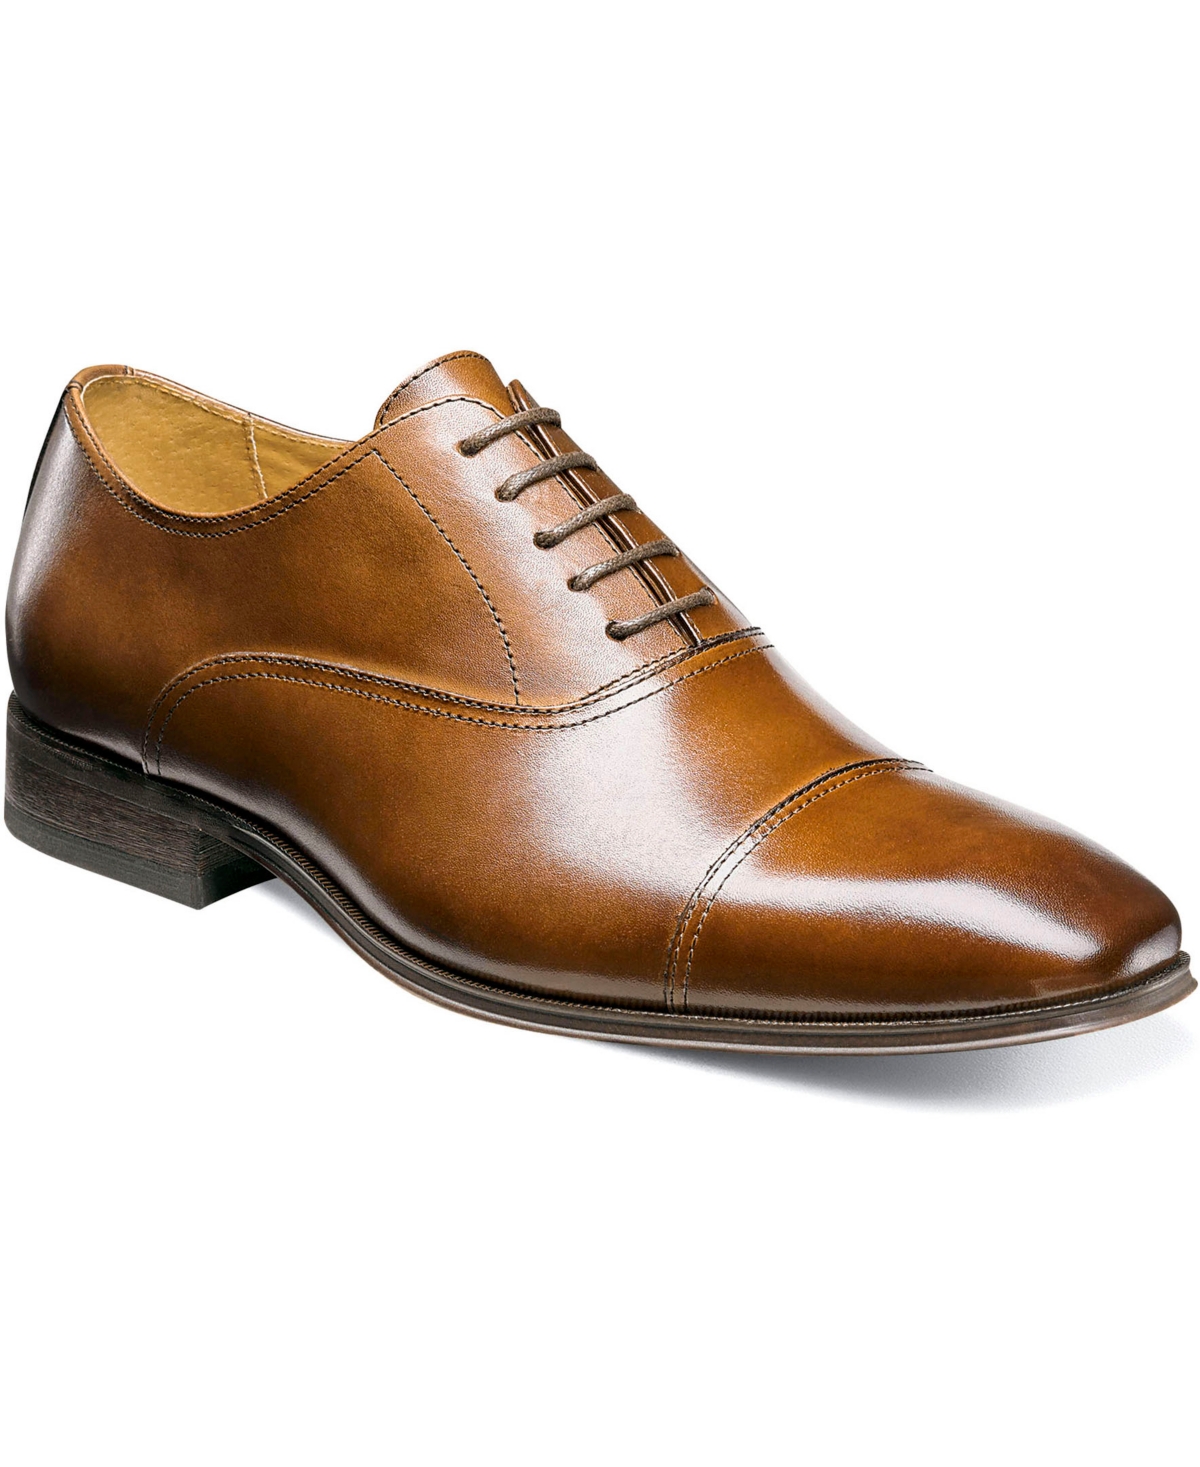 Men's Chicago Cap Toe Oxford Dress Shoes - Scotch